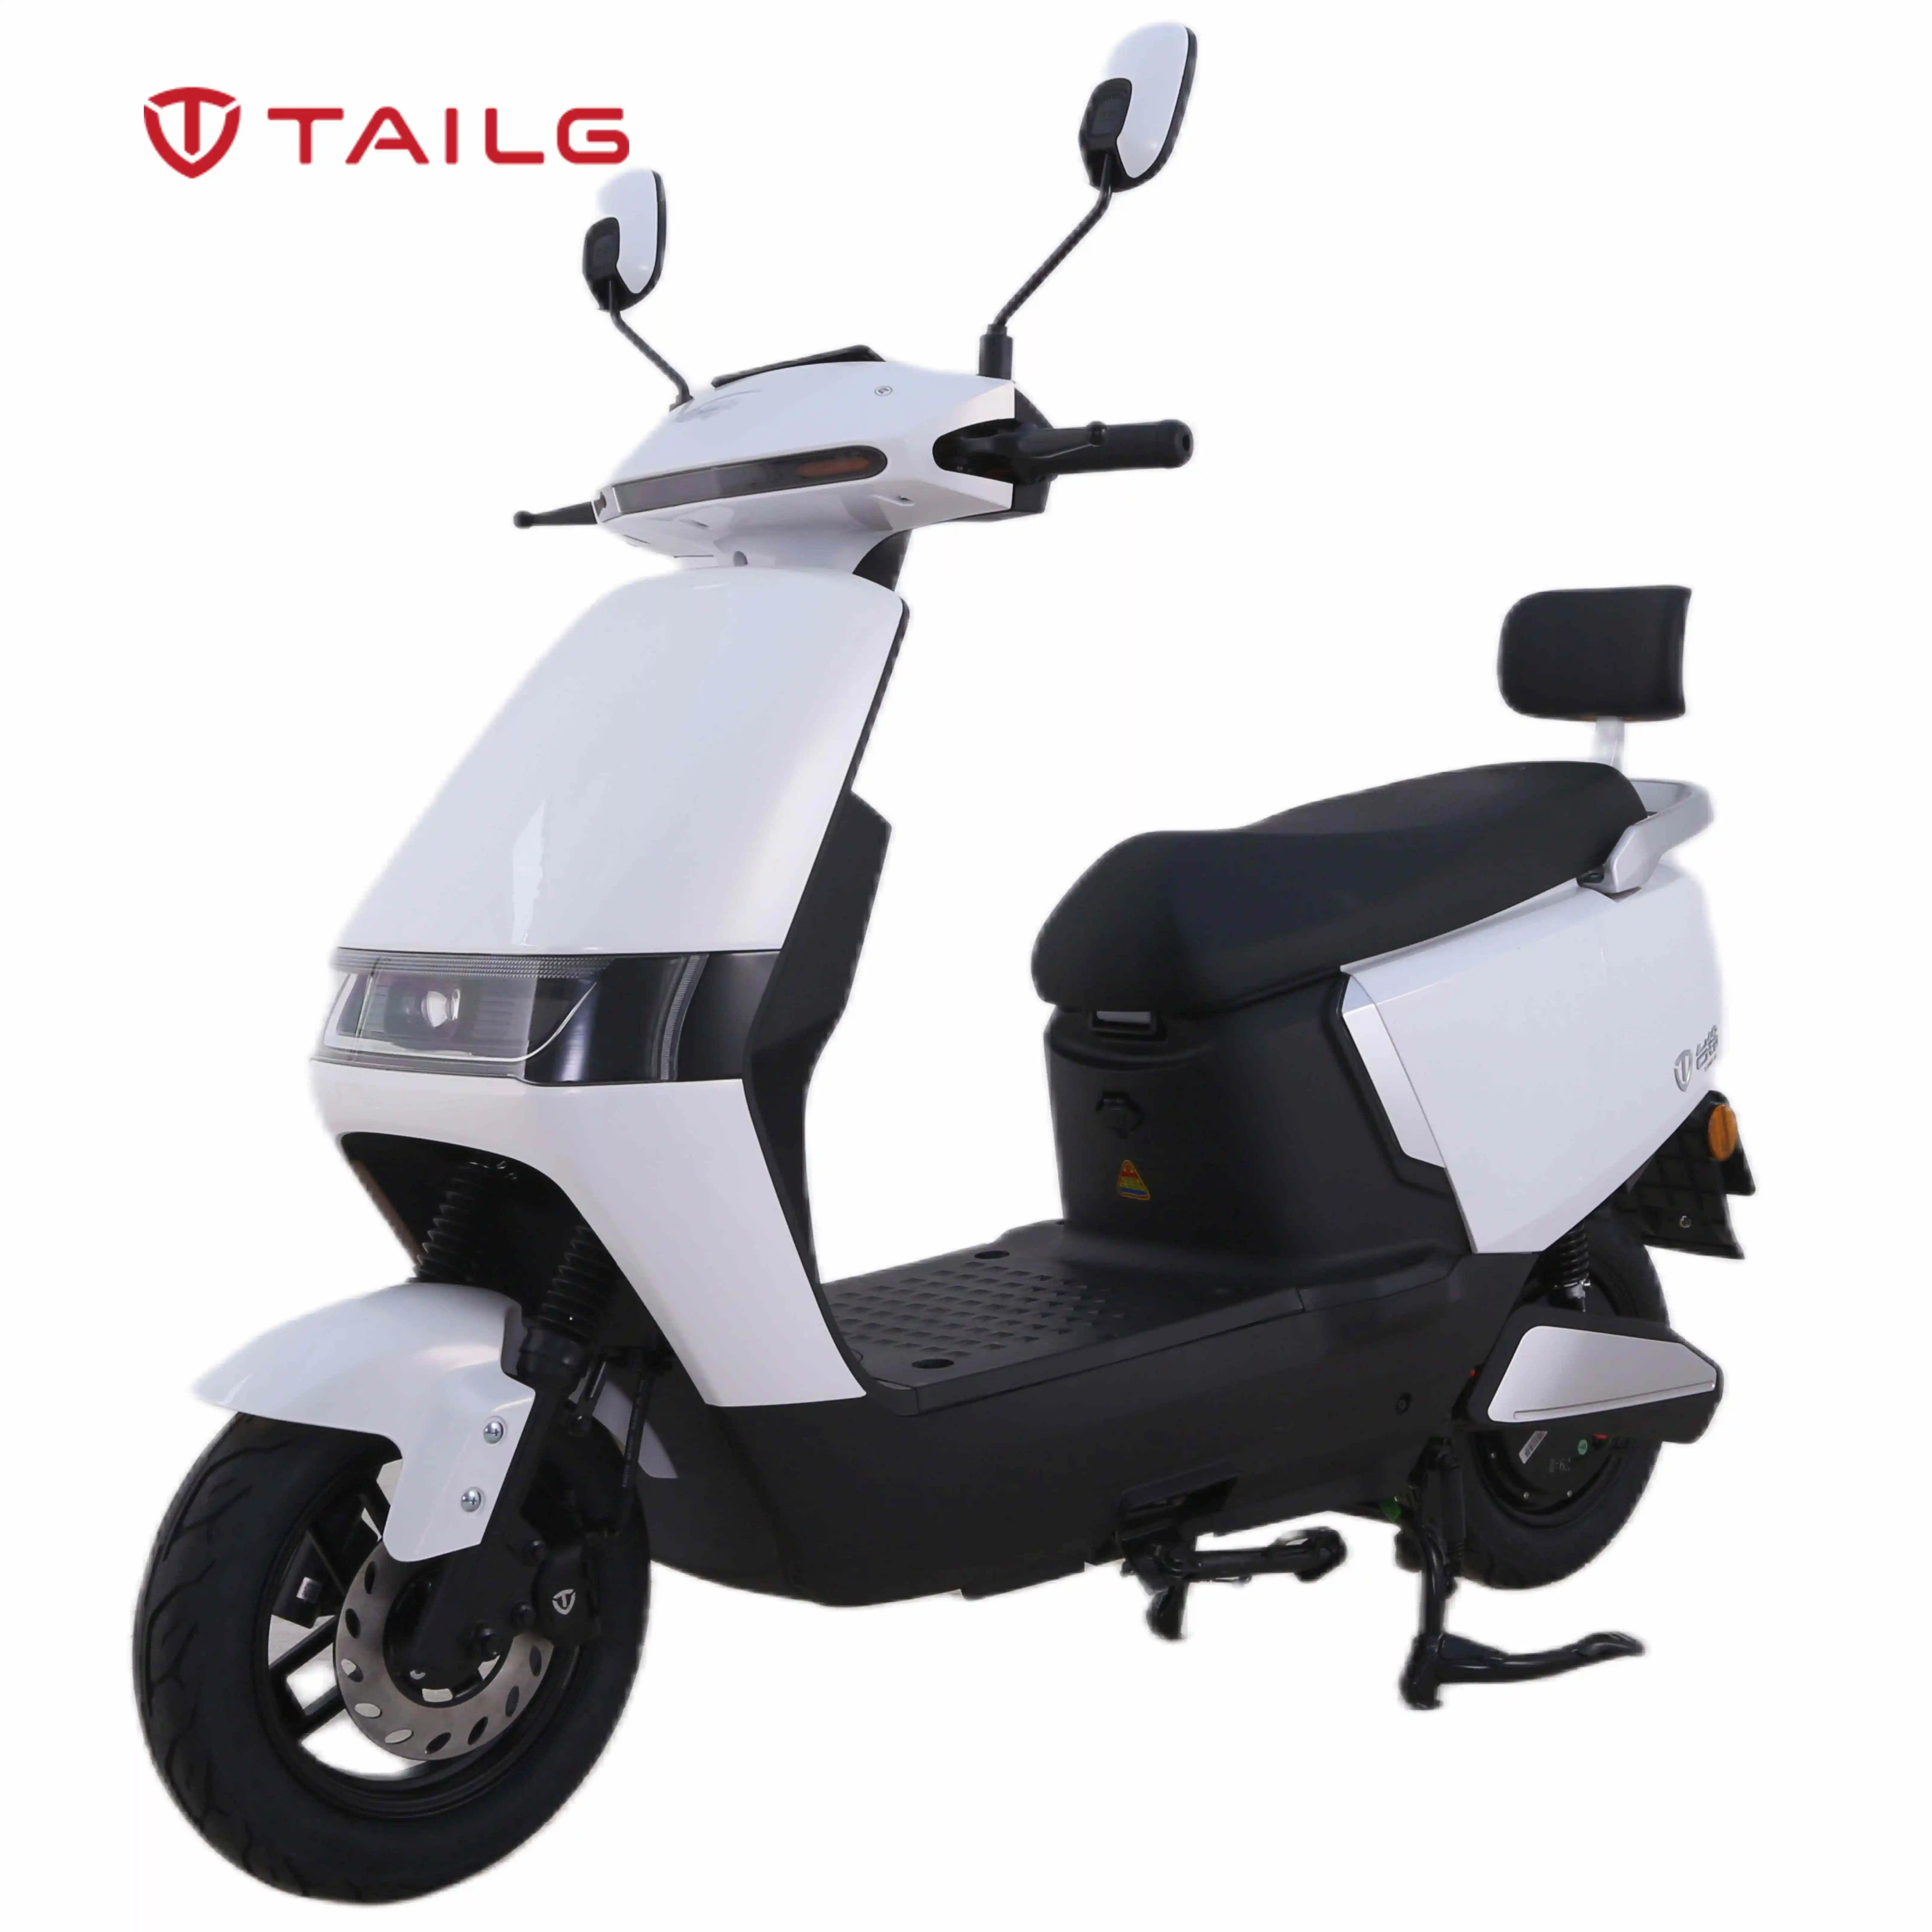 TAILG 저렴한 클래식 모터 사이클 모델 1500W 150CC 100CC 전자 오토바이 스쿠터 전기 오토바이 판매